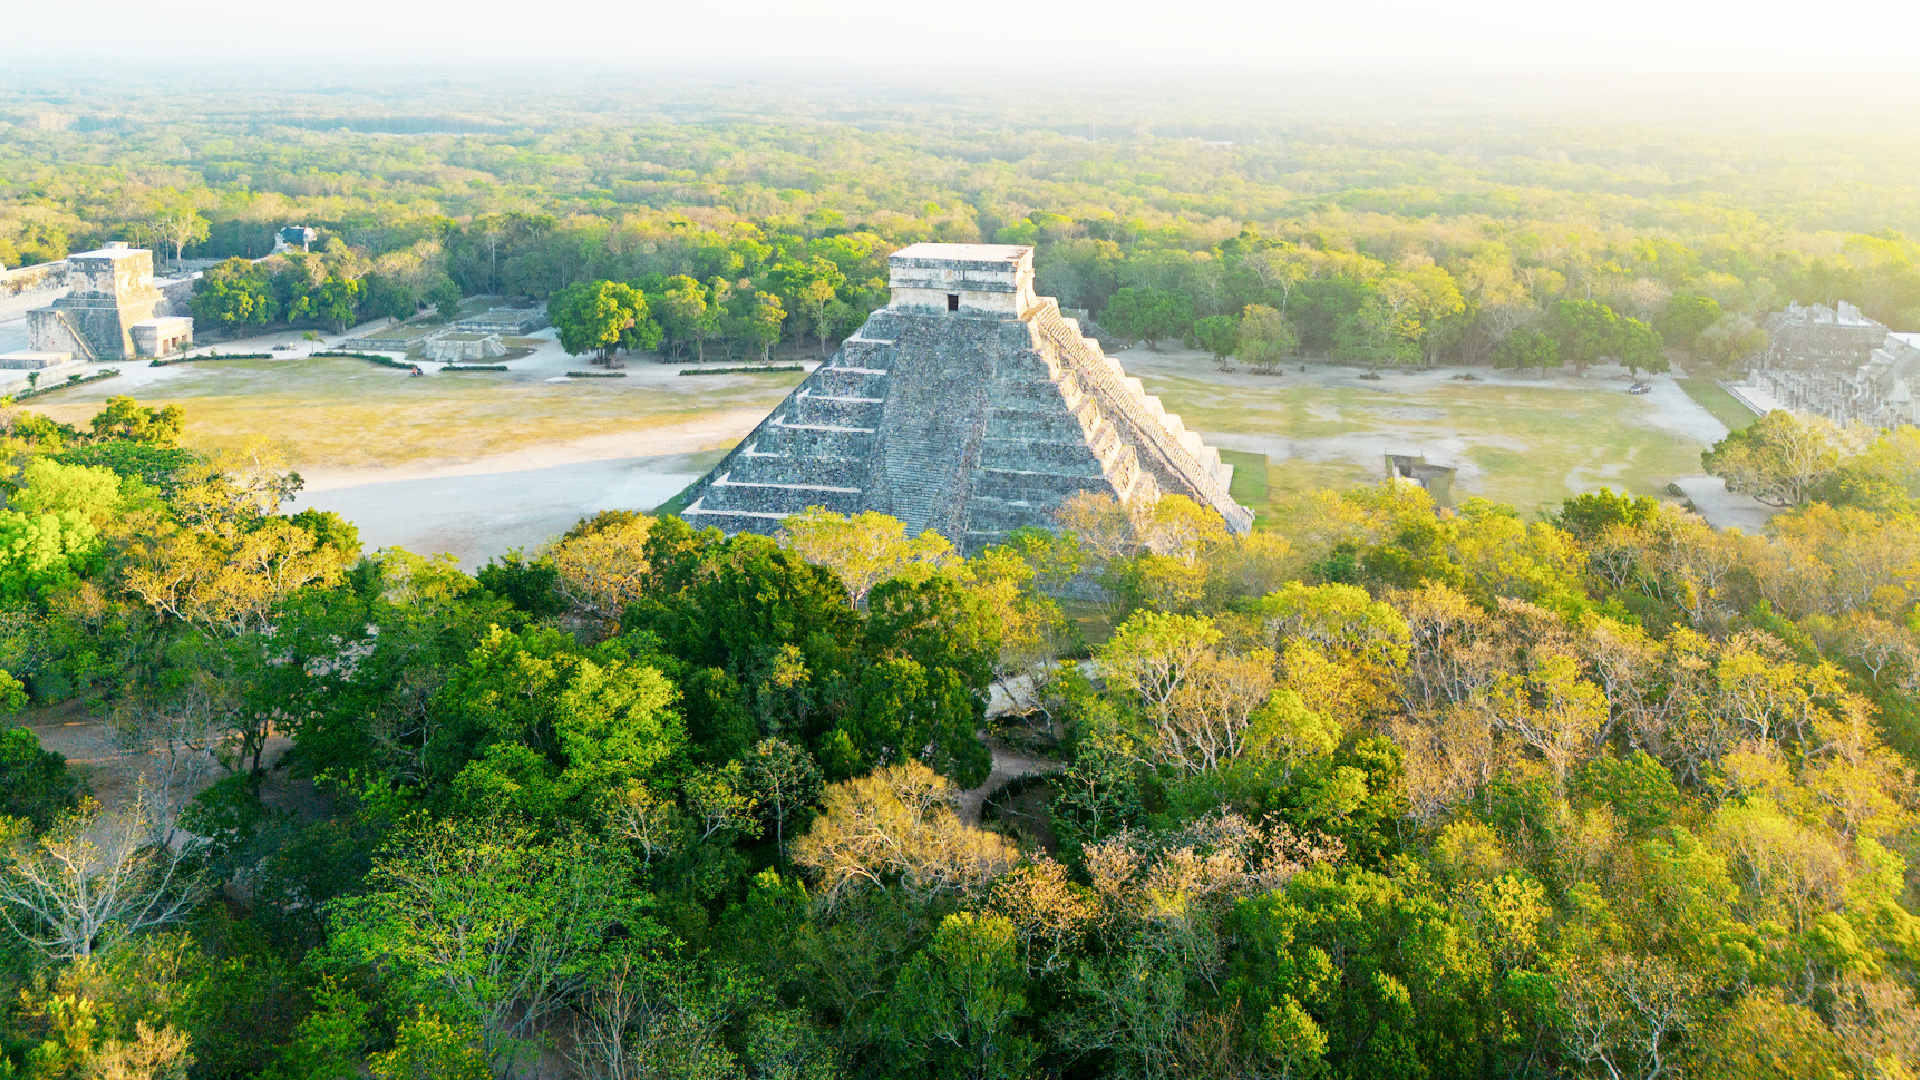 El encanto de Chichén Itzá atrae a millones de turistas